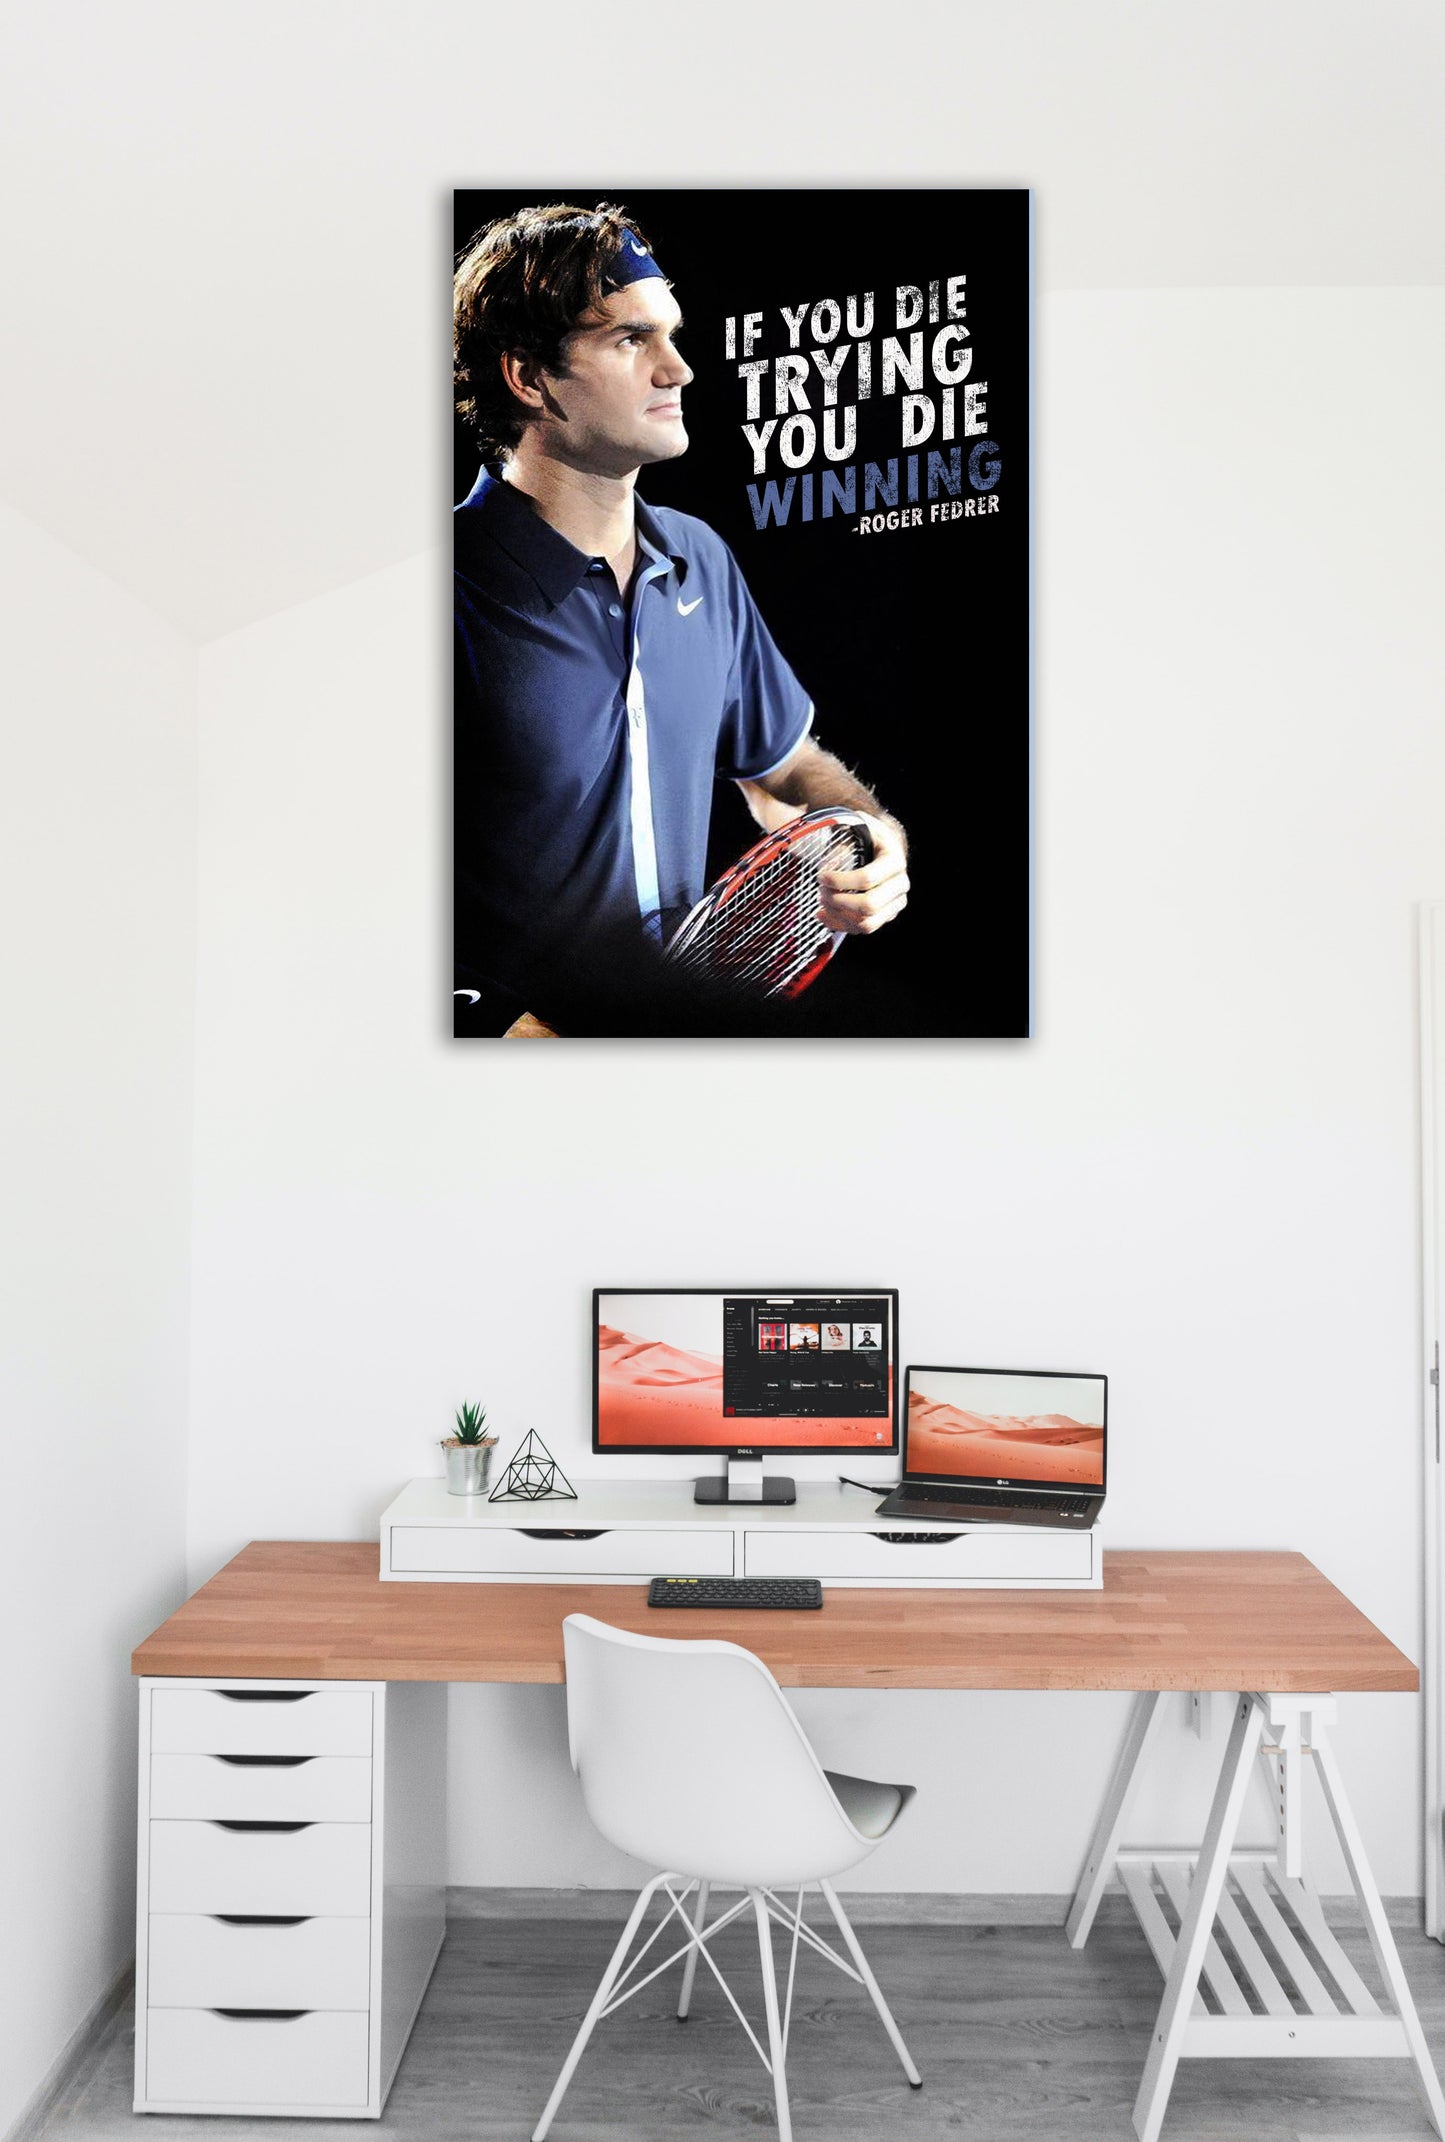 Roger Federer Quote Motivational Artwork